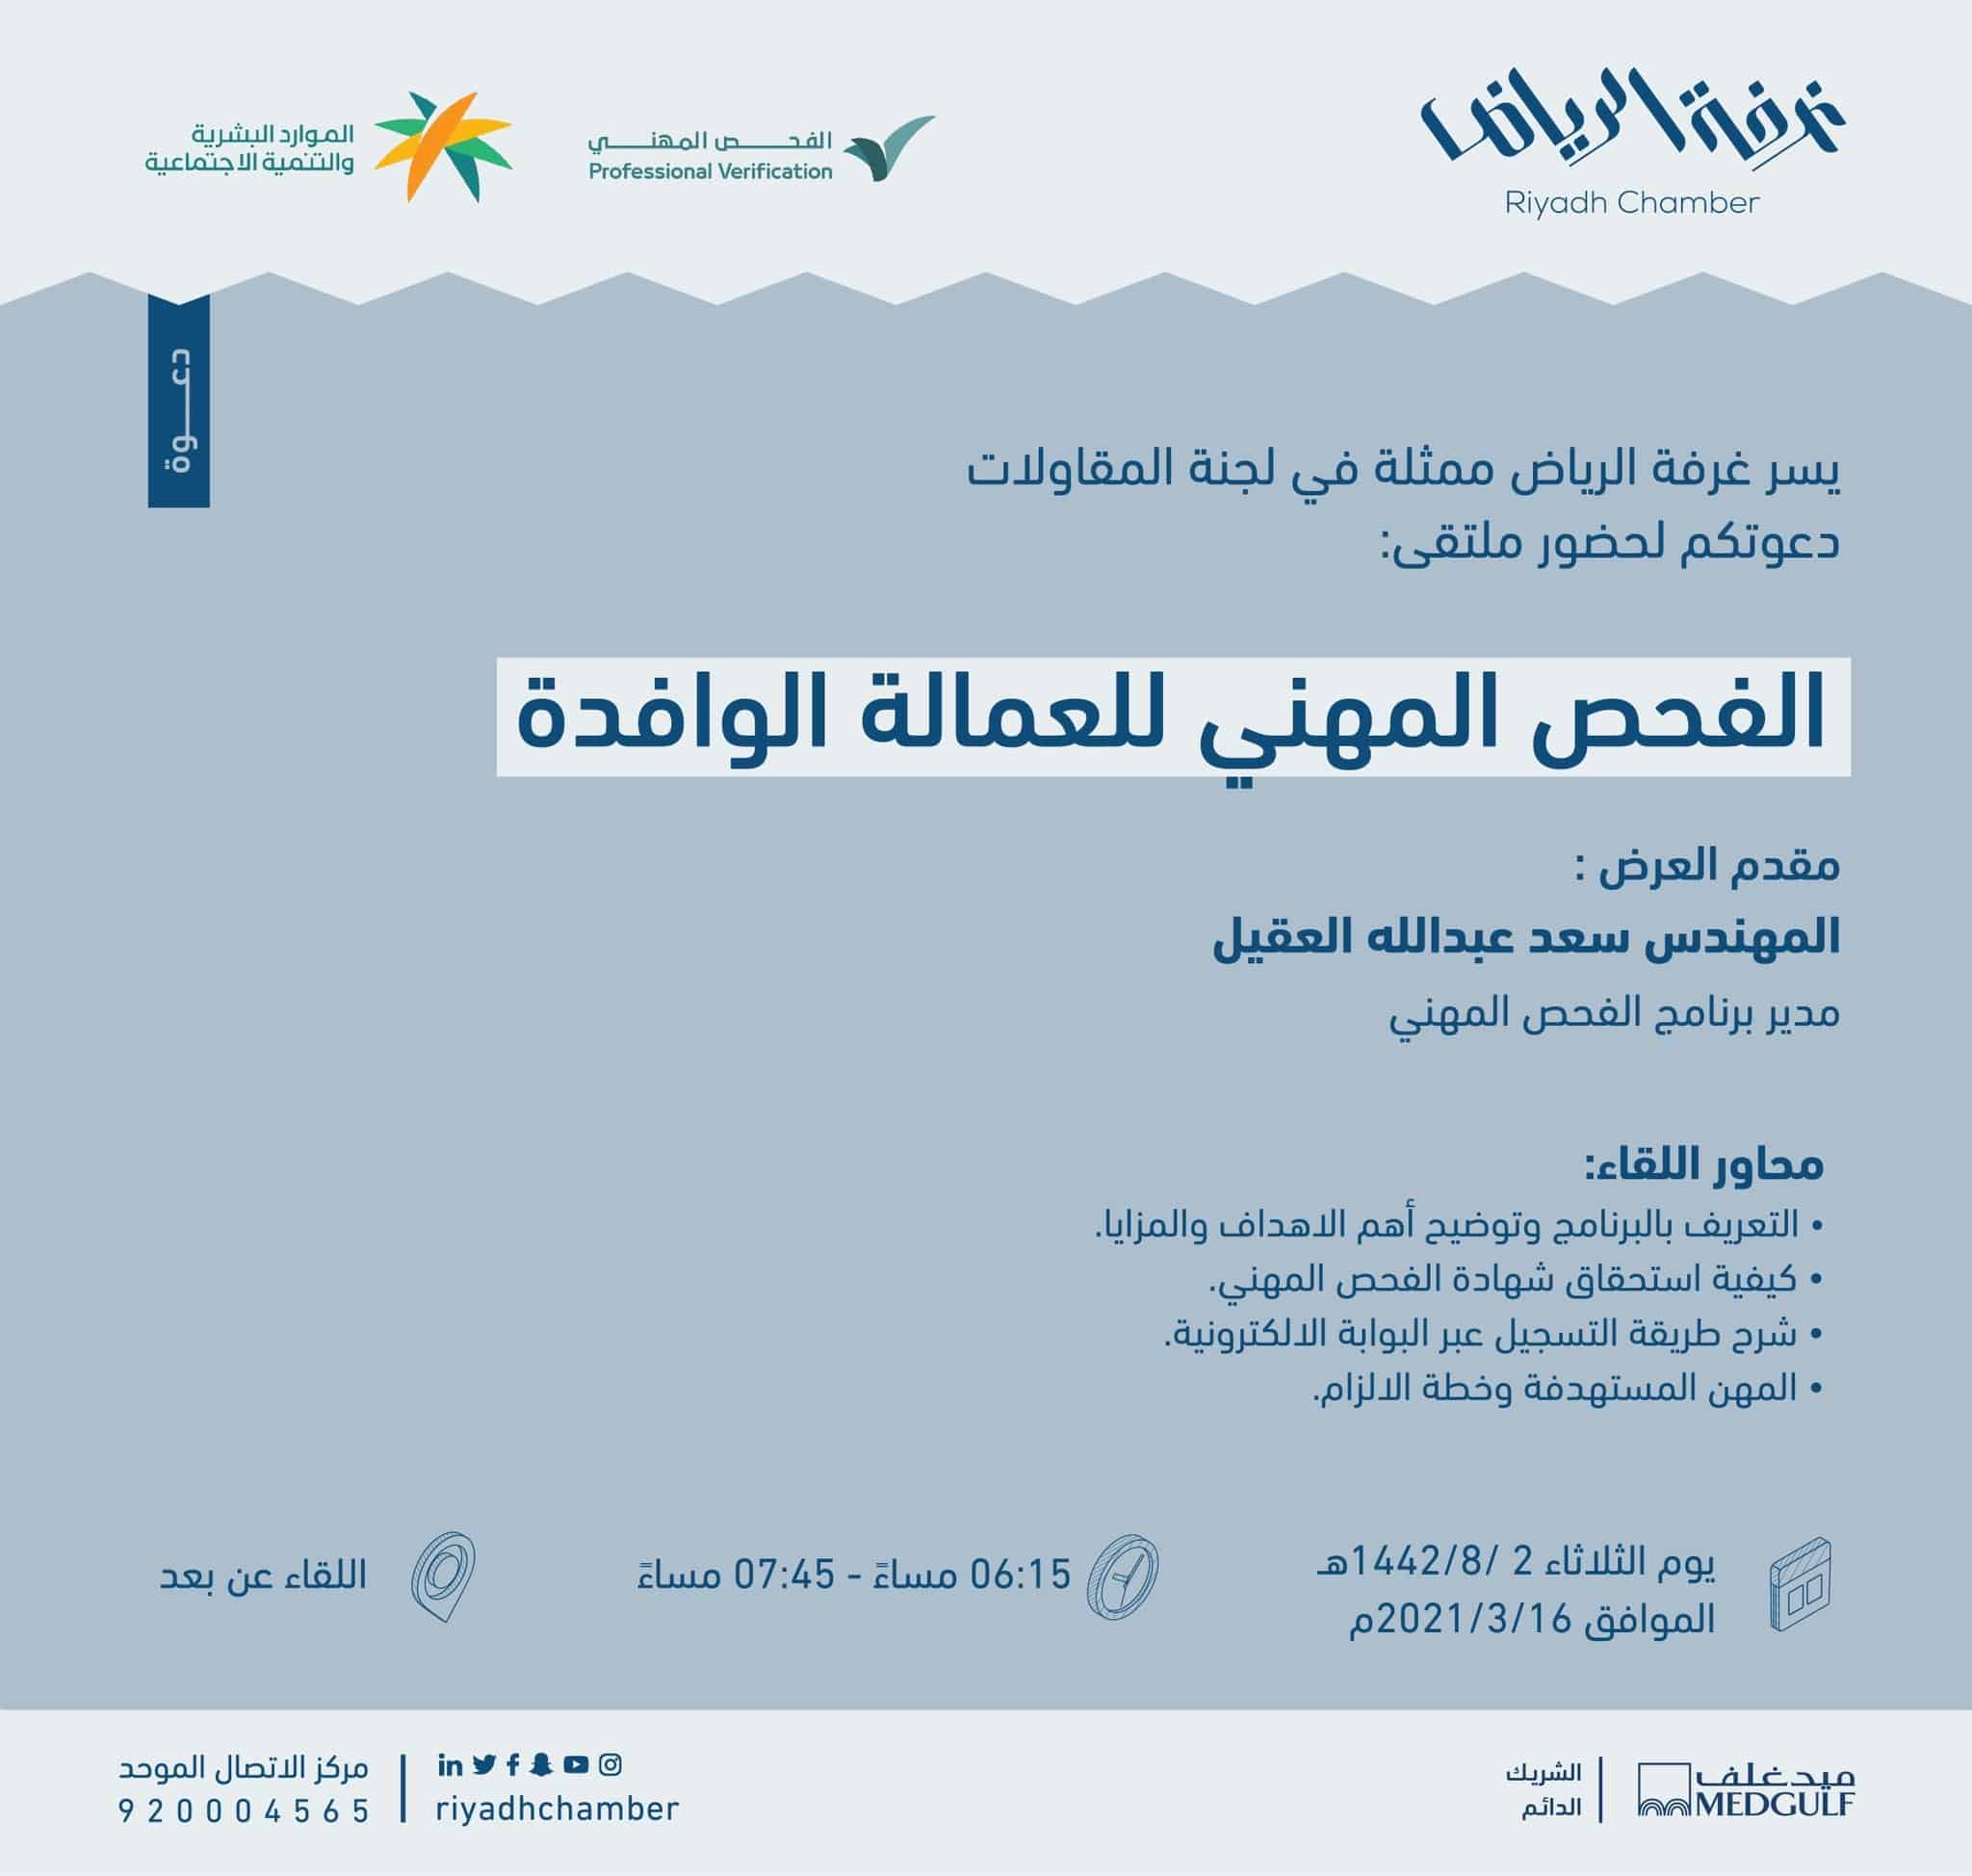 رابط التسجيل في برنامج الفحص المهني للمقيمين داخل المملكة العربية السعودية